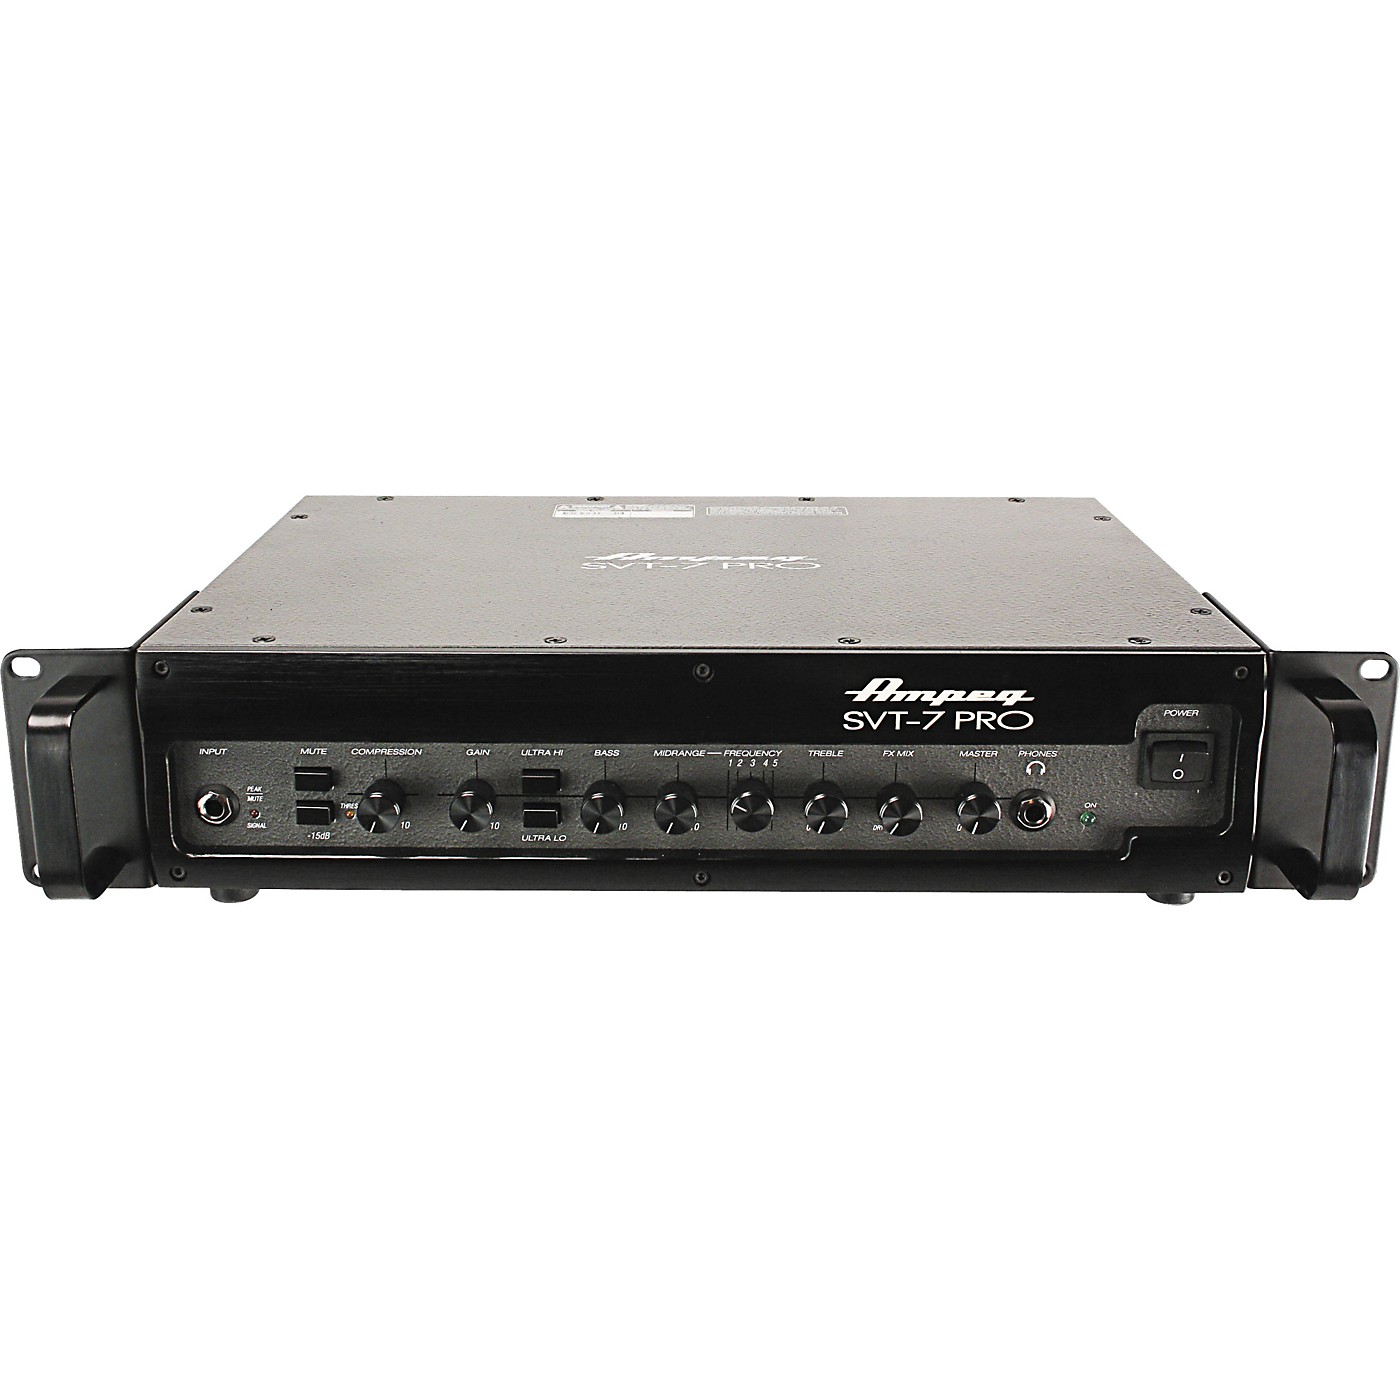 Ampeg SVT-7PRO 1,000W Class-D Bass Amp Head thumbnail